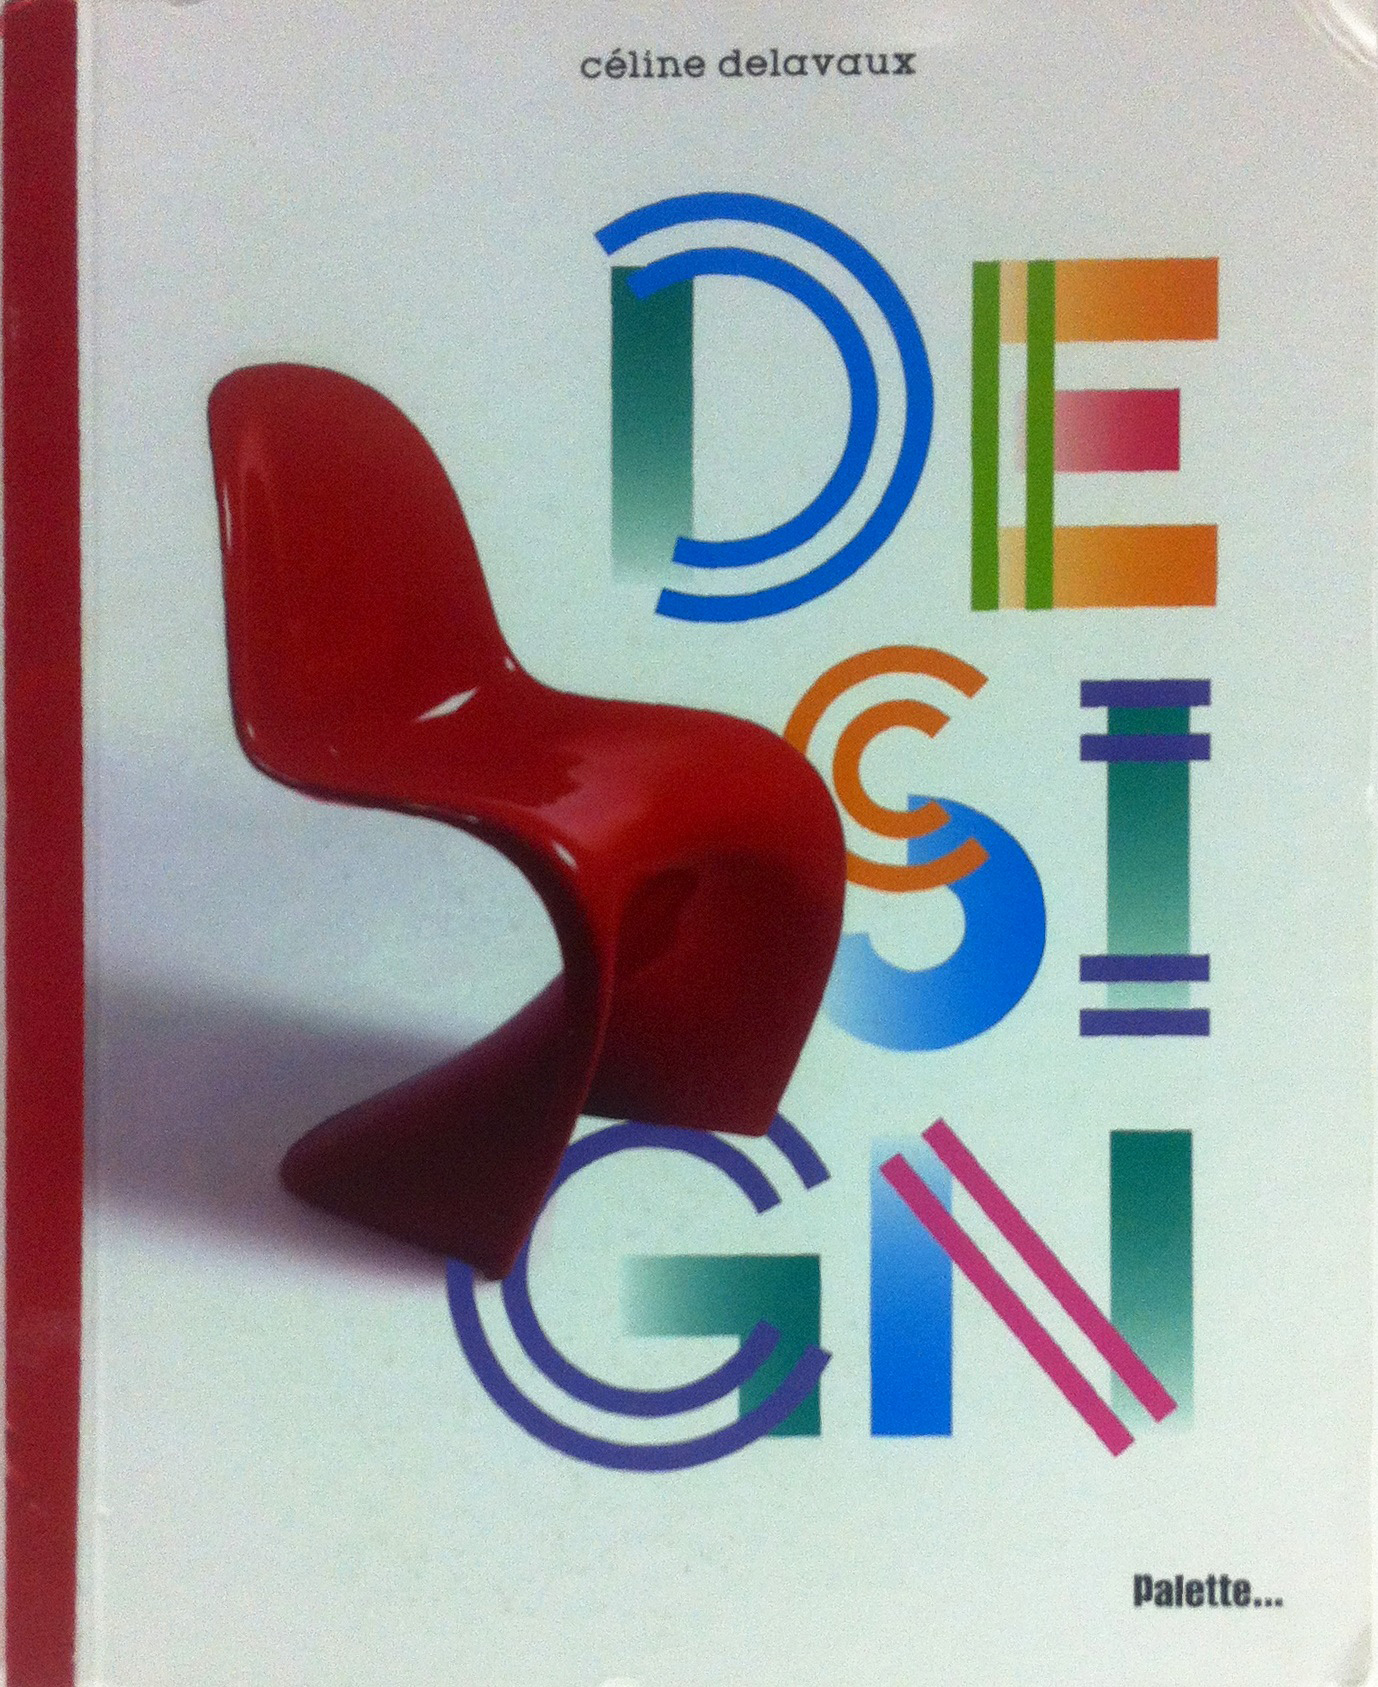 celine dealveux, classics of Design, edizioni palette - 2011, enrique luis sardi, business innovation, sardi innovation